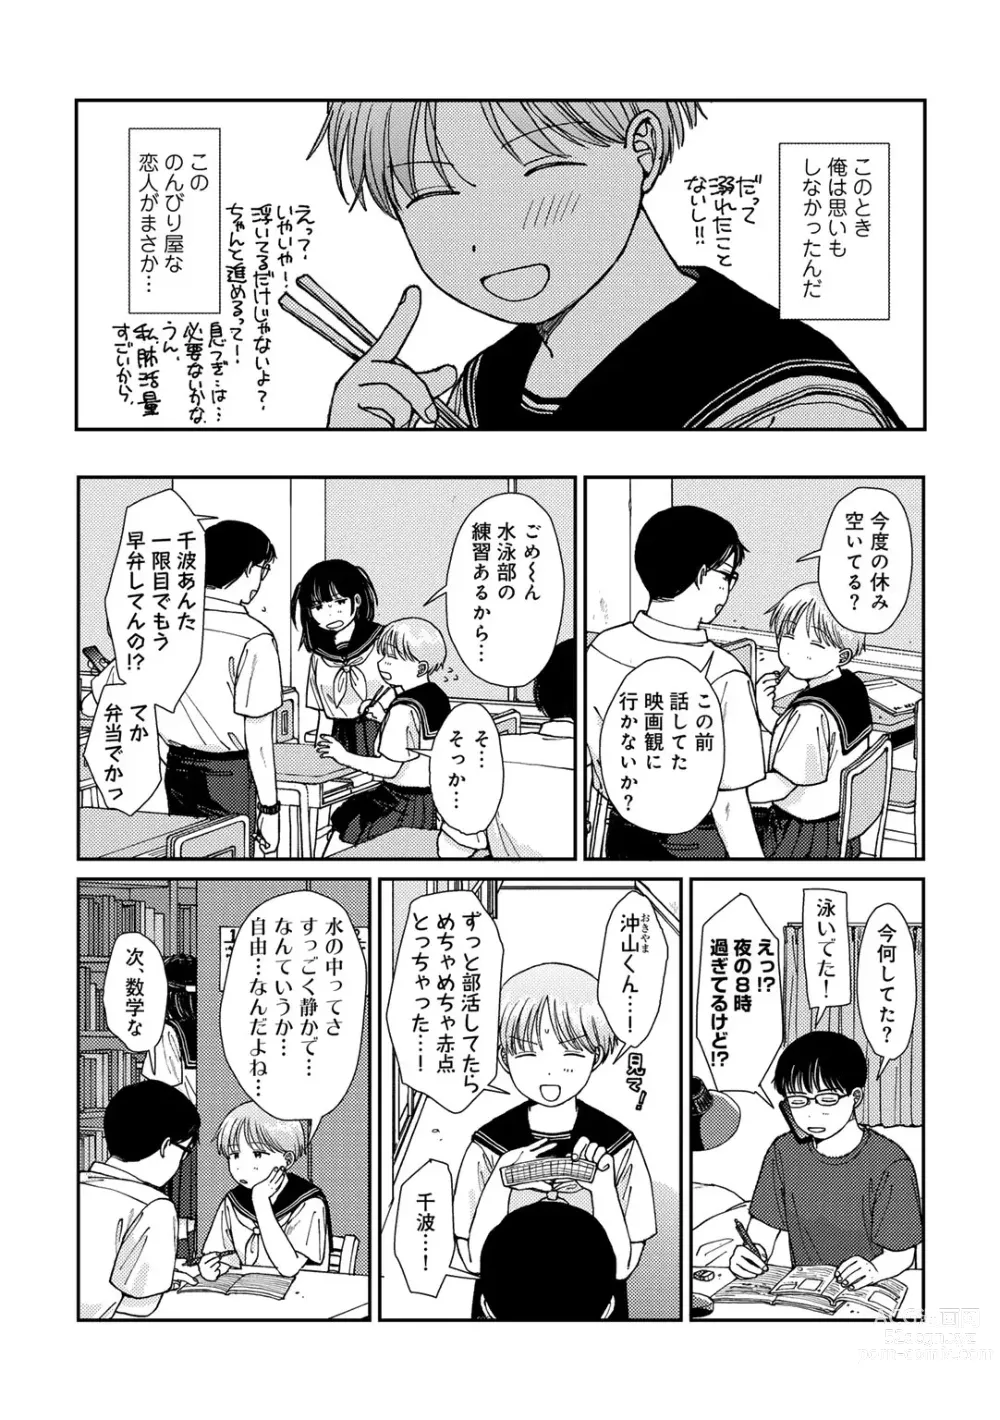 Page 4 of manga COMIC kisshug vol.4